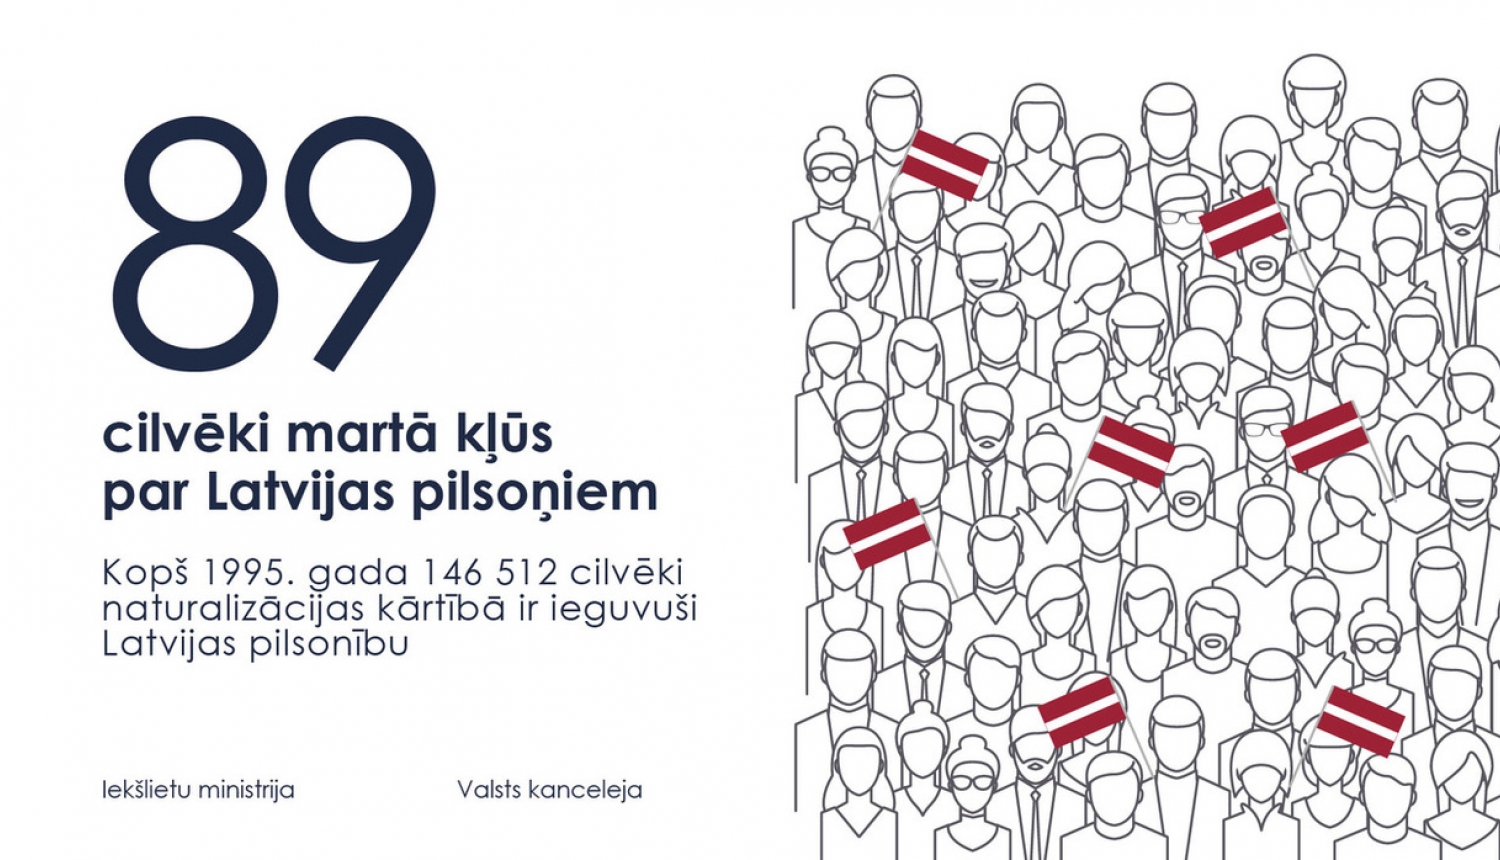 Latvijas pilsonībā uzņemtas 89 personas